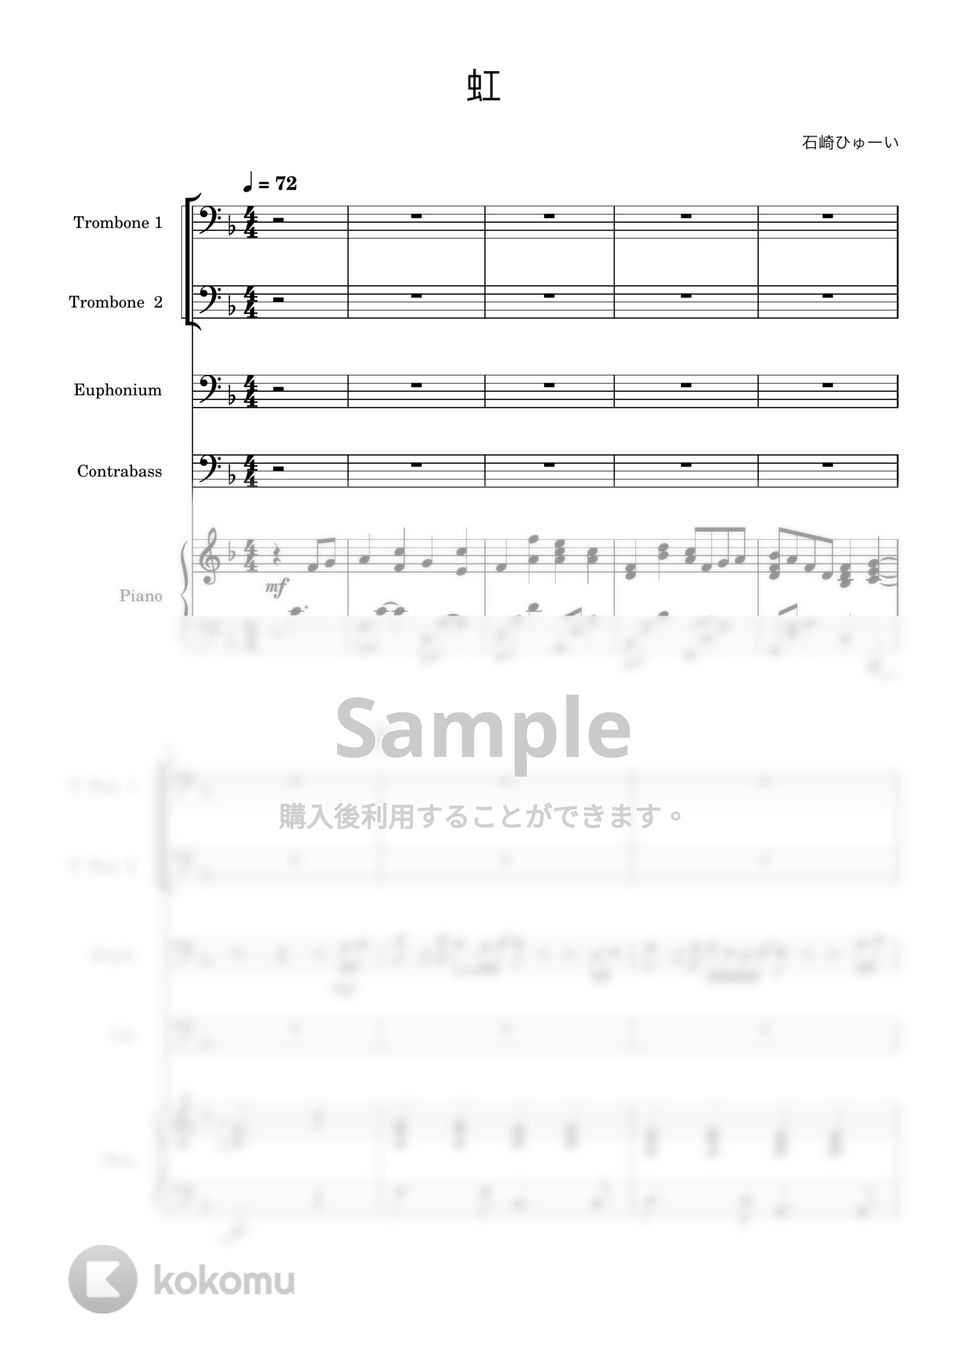 石崎ひゅーい - 虹 (ピアノ/2トロンボーン/ユーフォニアム/コントラバス) by 川上龍